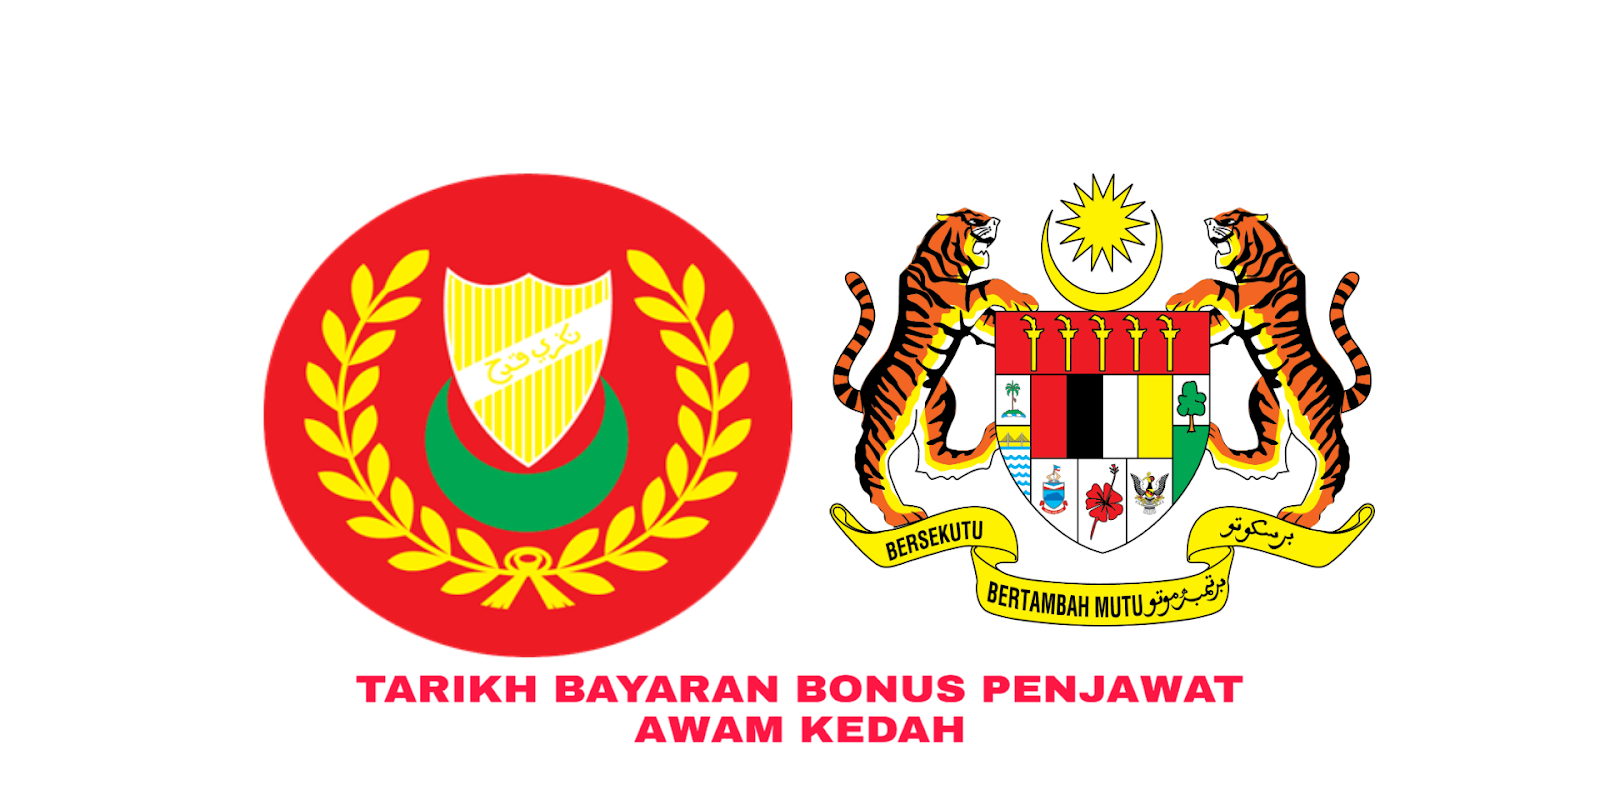 Tarikh Bayaran Bonus Penjawat Awam Kedah 2020 - MY PANDUAN